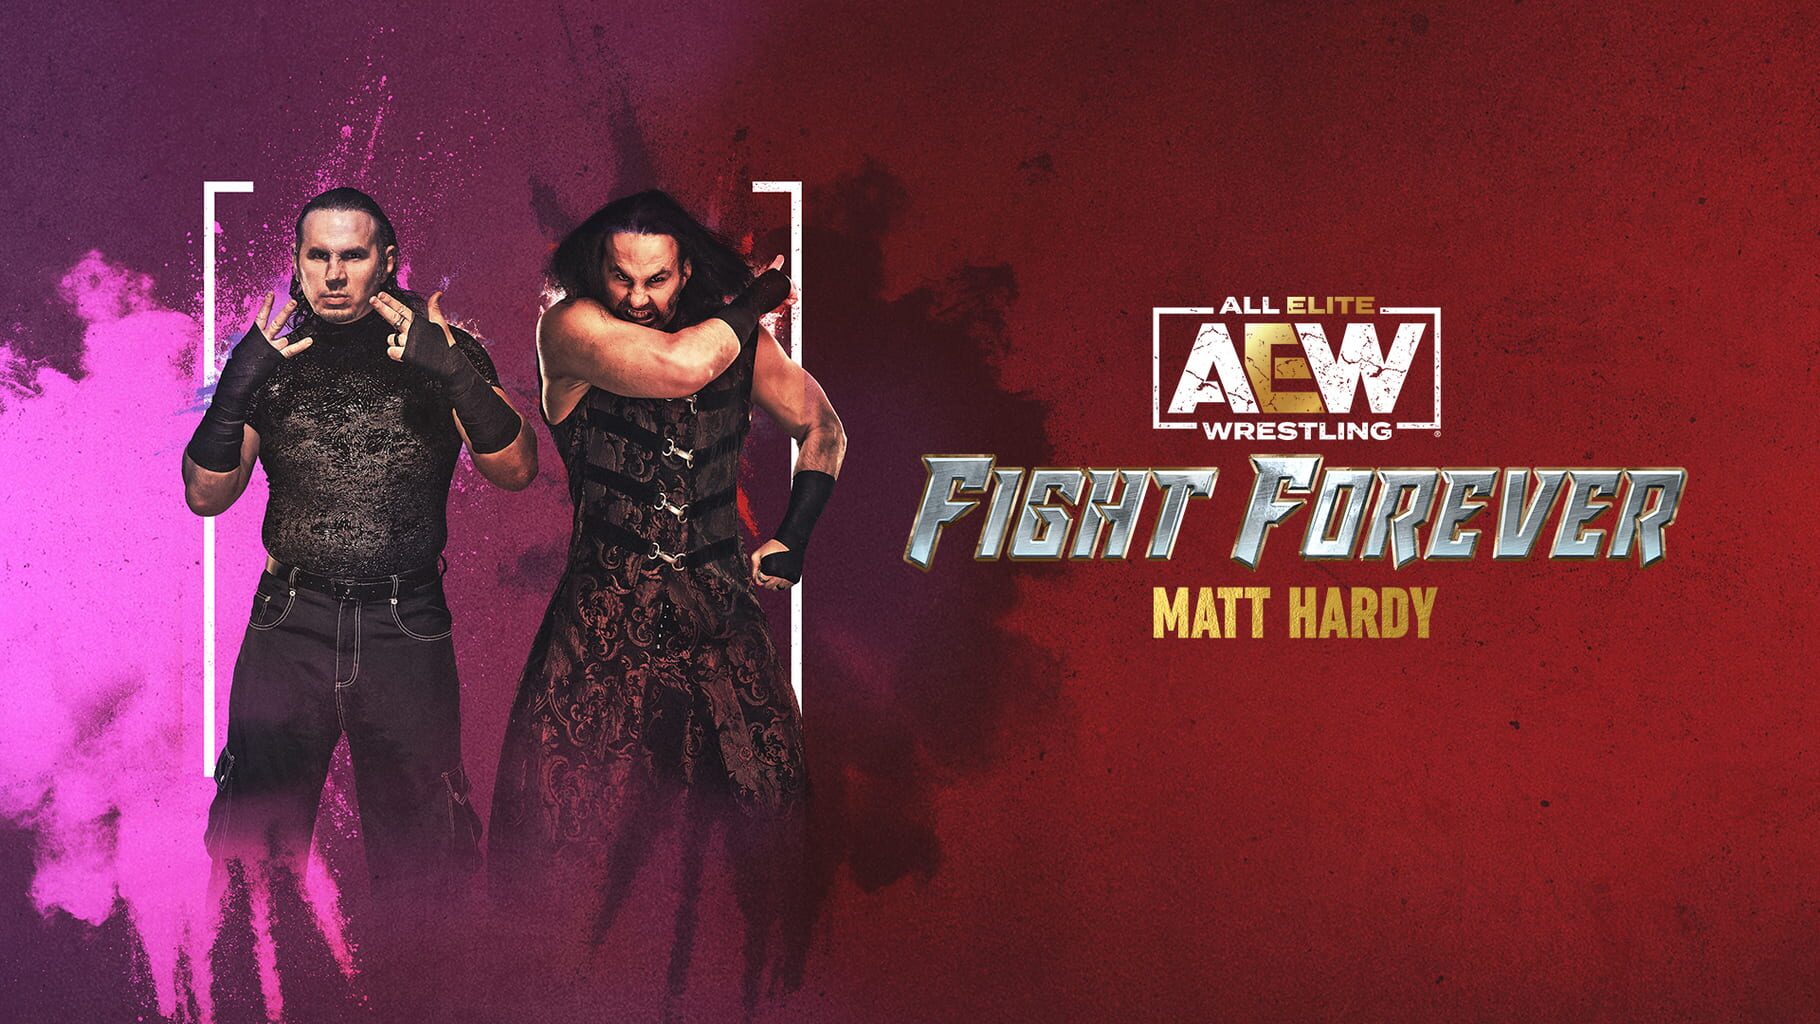 Arte - All Elite Wrestling: Fight Forever - Matt Hardy